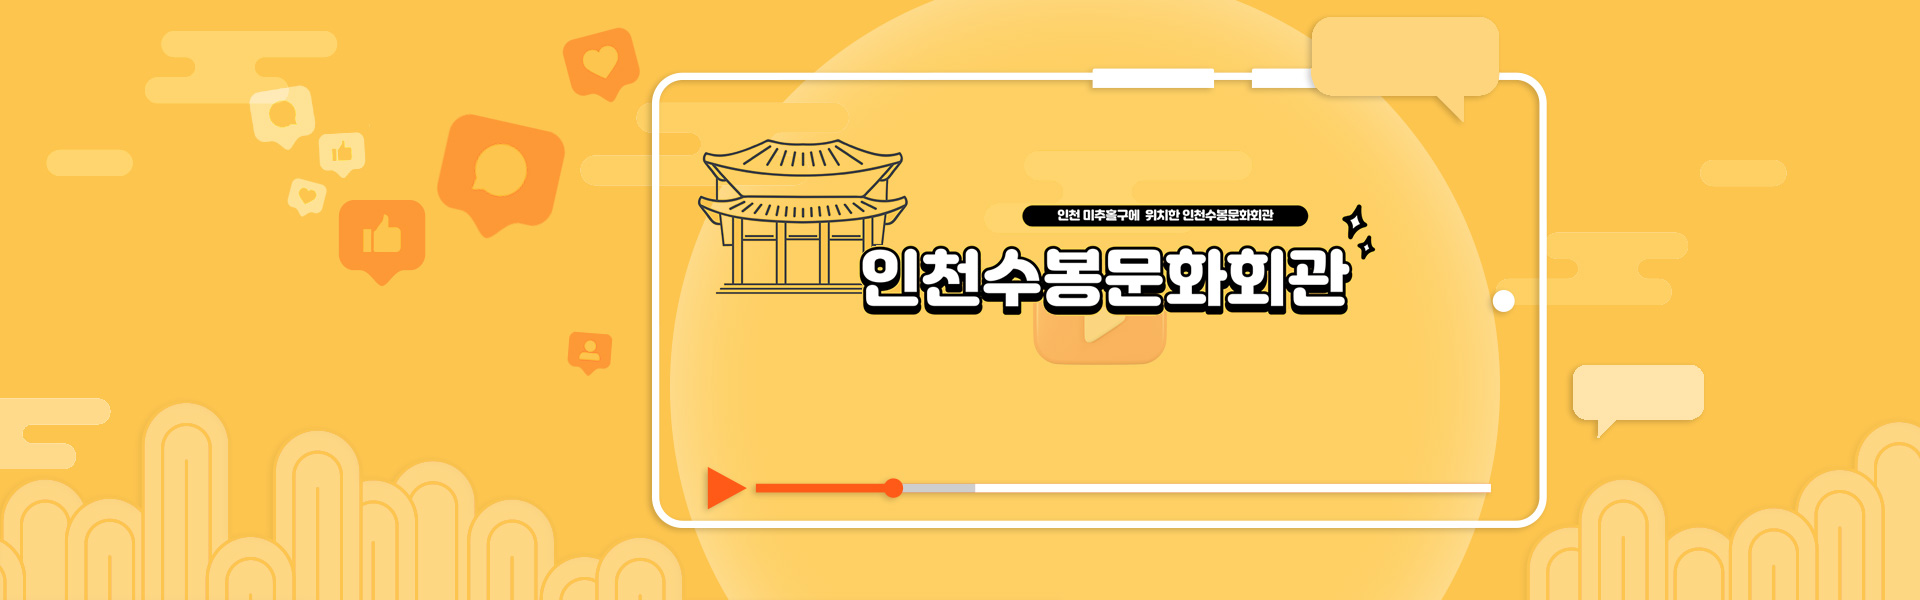 수봉문화회관 - YouTube 